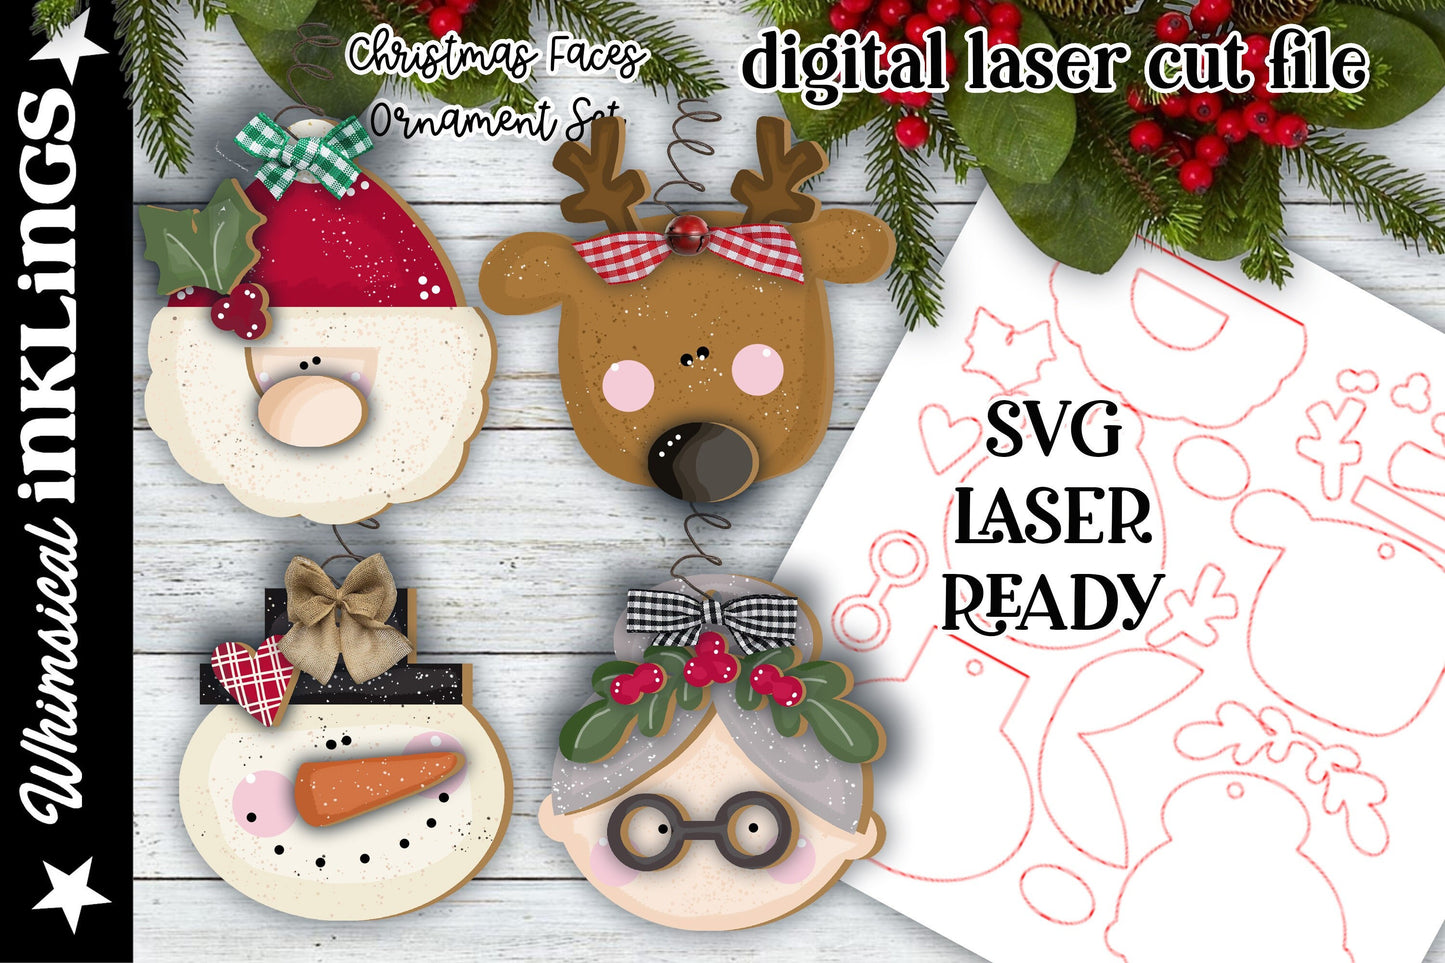 Christmas Faces Ornament Set |Mrs. Claus SVG| Laser Cut Christmas Ornaments Ornament| Glow Forge| Ornament SVG